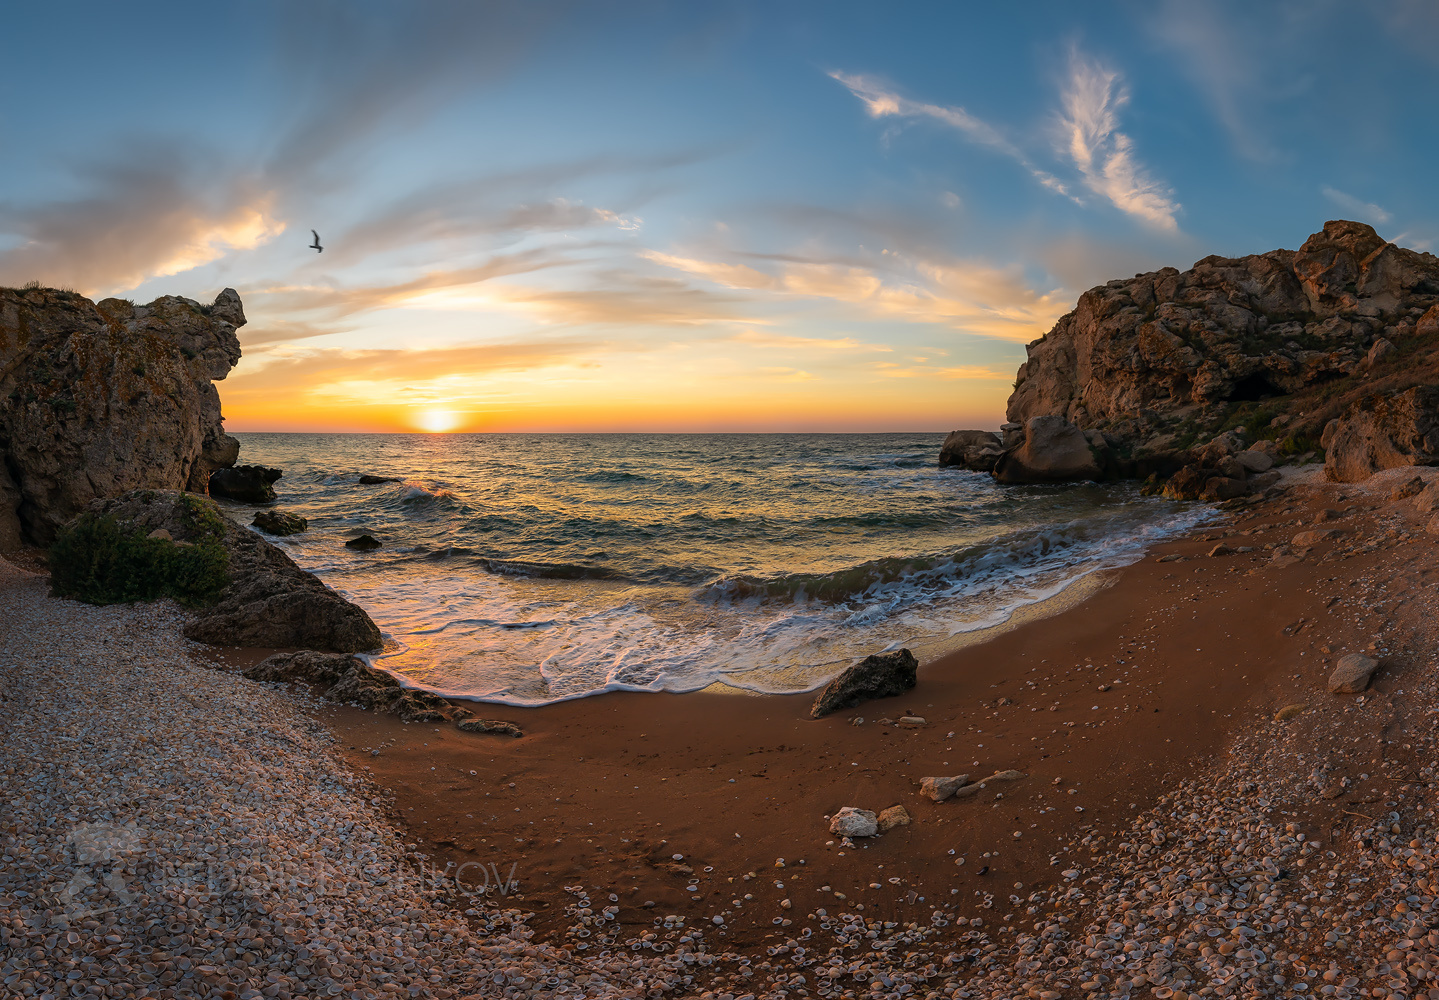 Азовское море Крым Азовское море закат небо яркое волны скалы обрыв скалистый берег бухта пляж камни облака путешествие туризм солнце